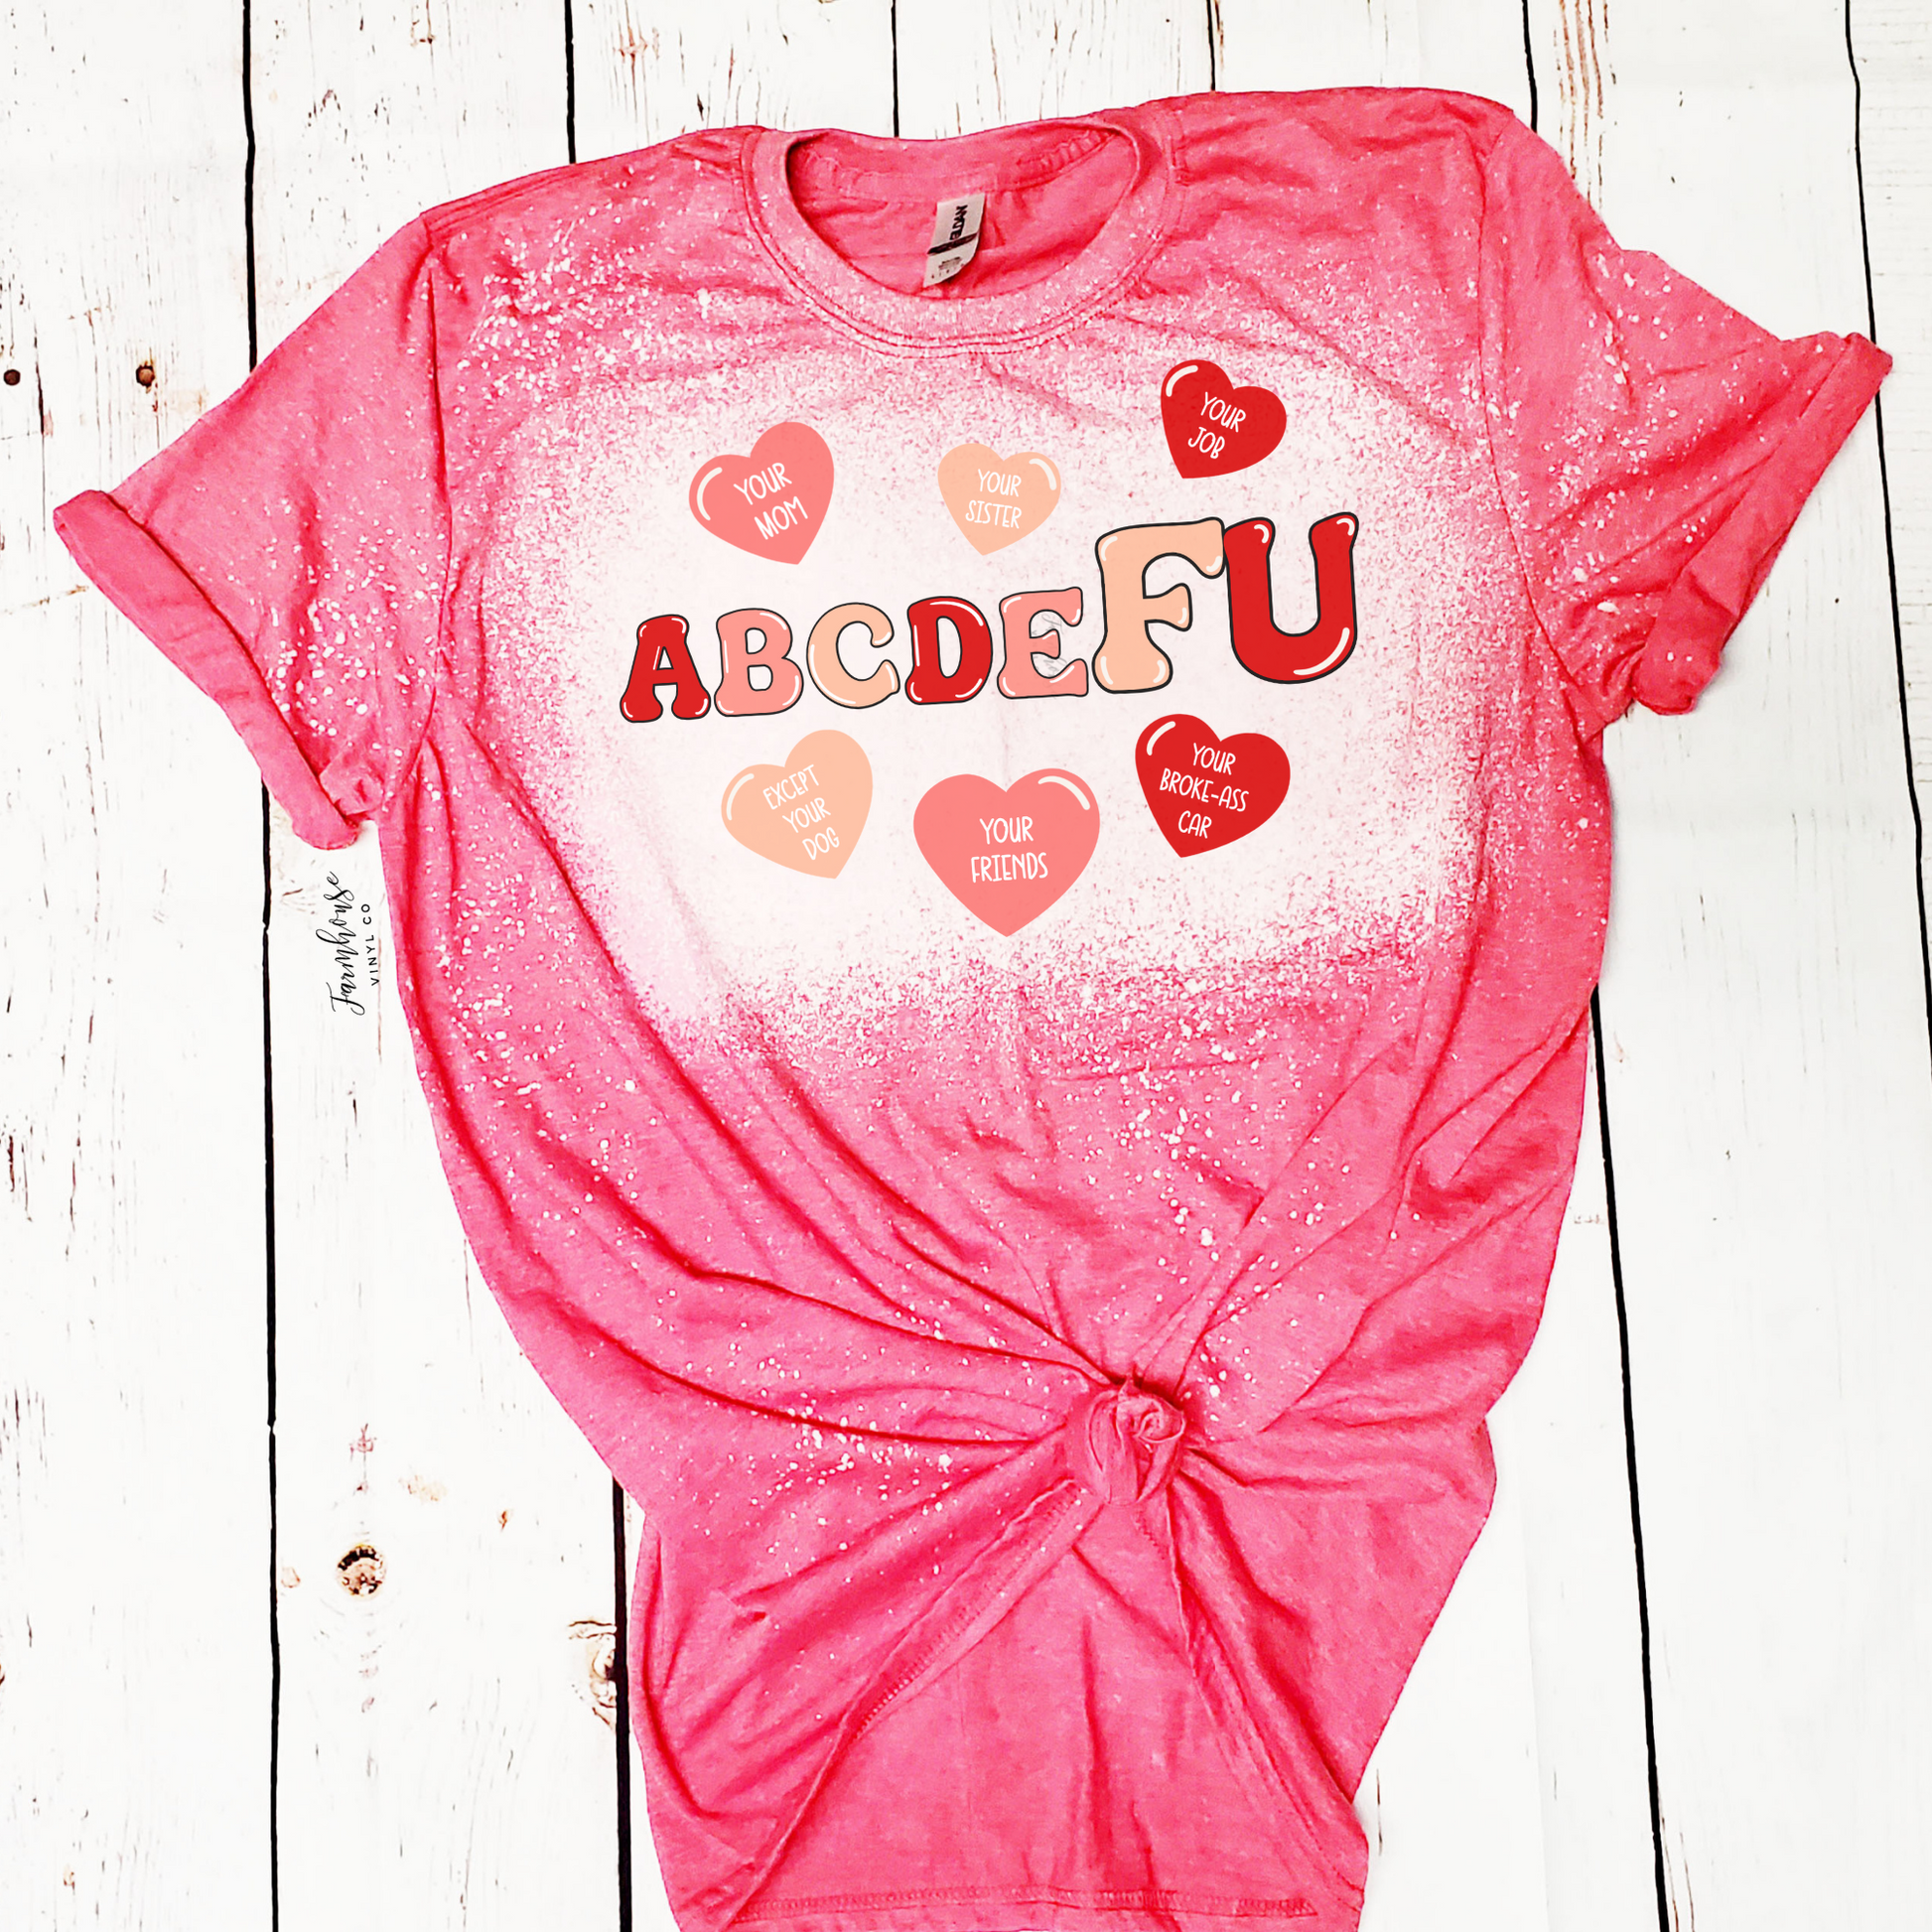 ABCDEFU Bleached Shirt - Farmhouse Vinyl Co